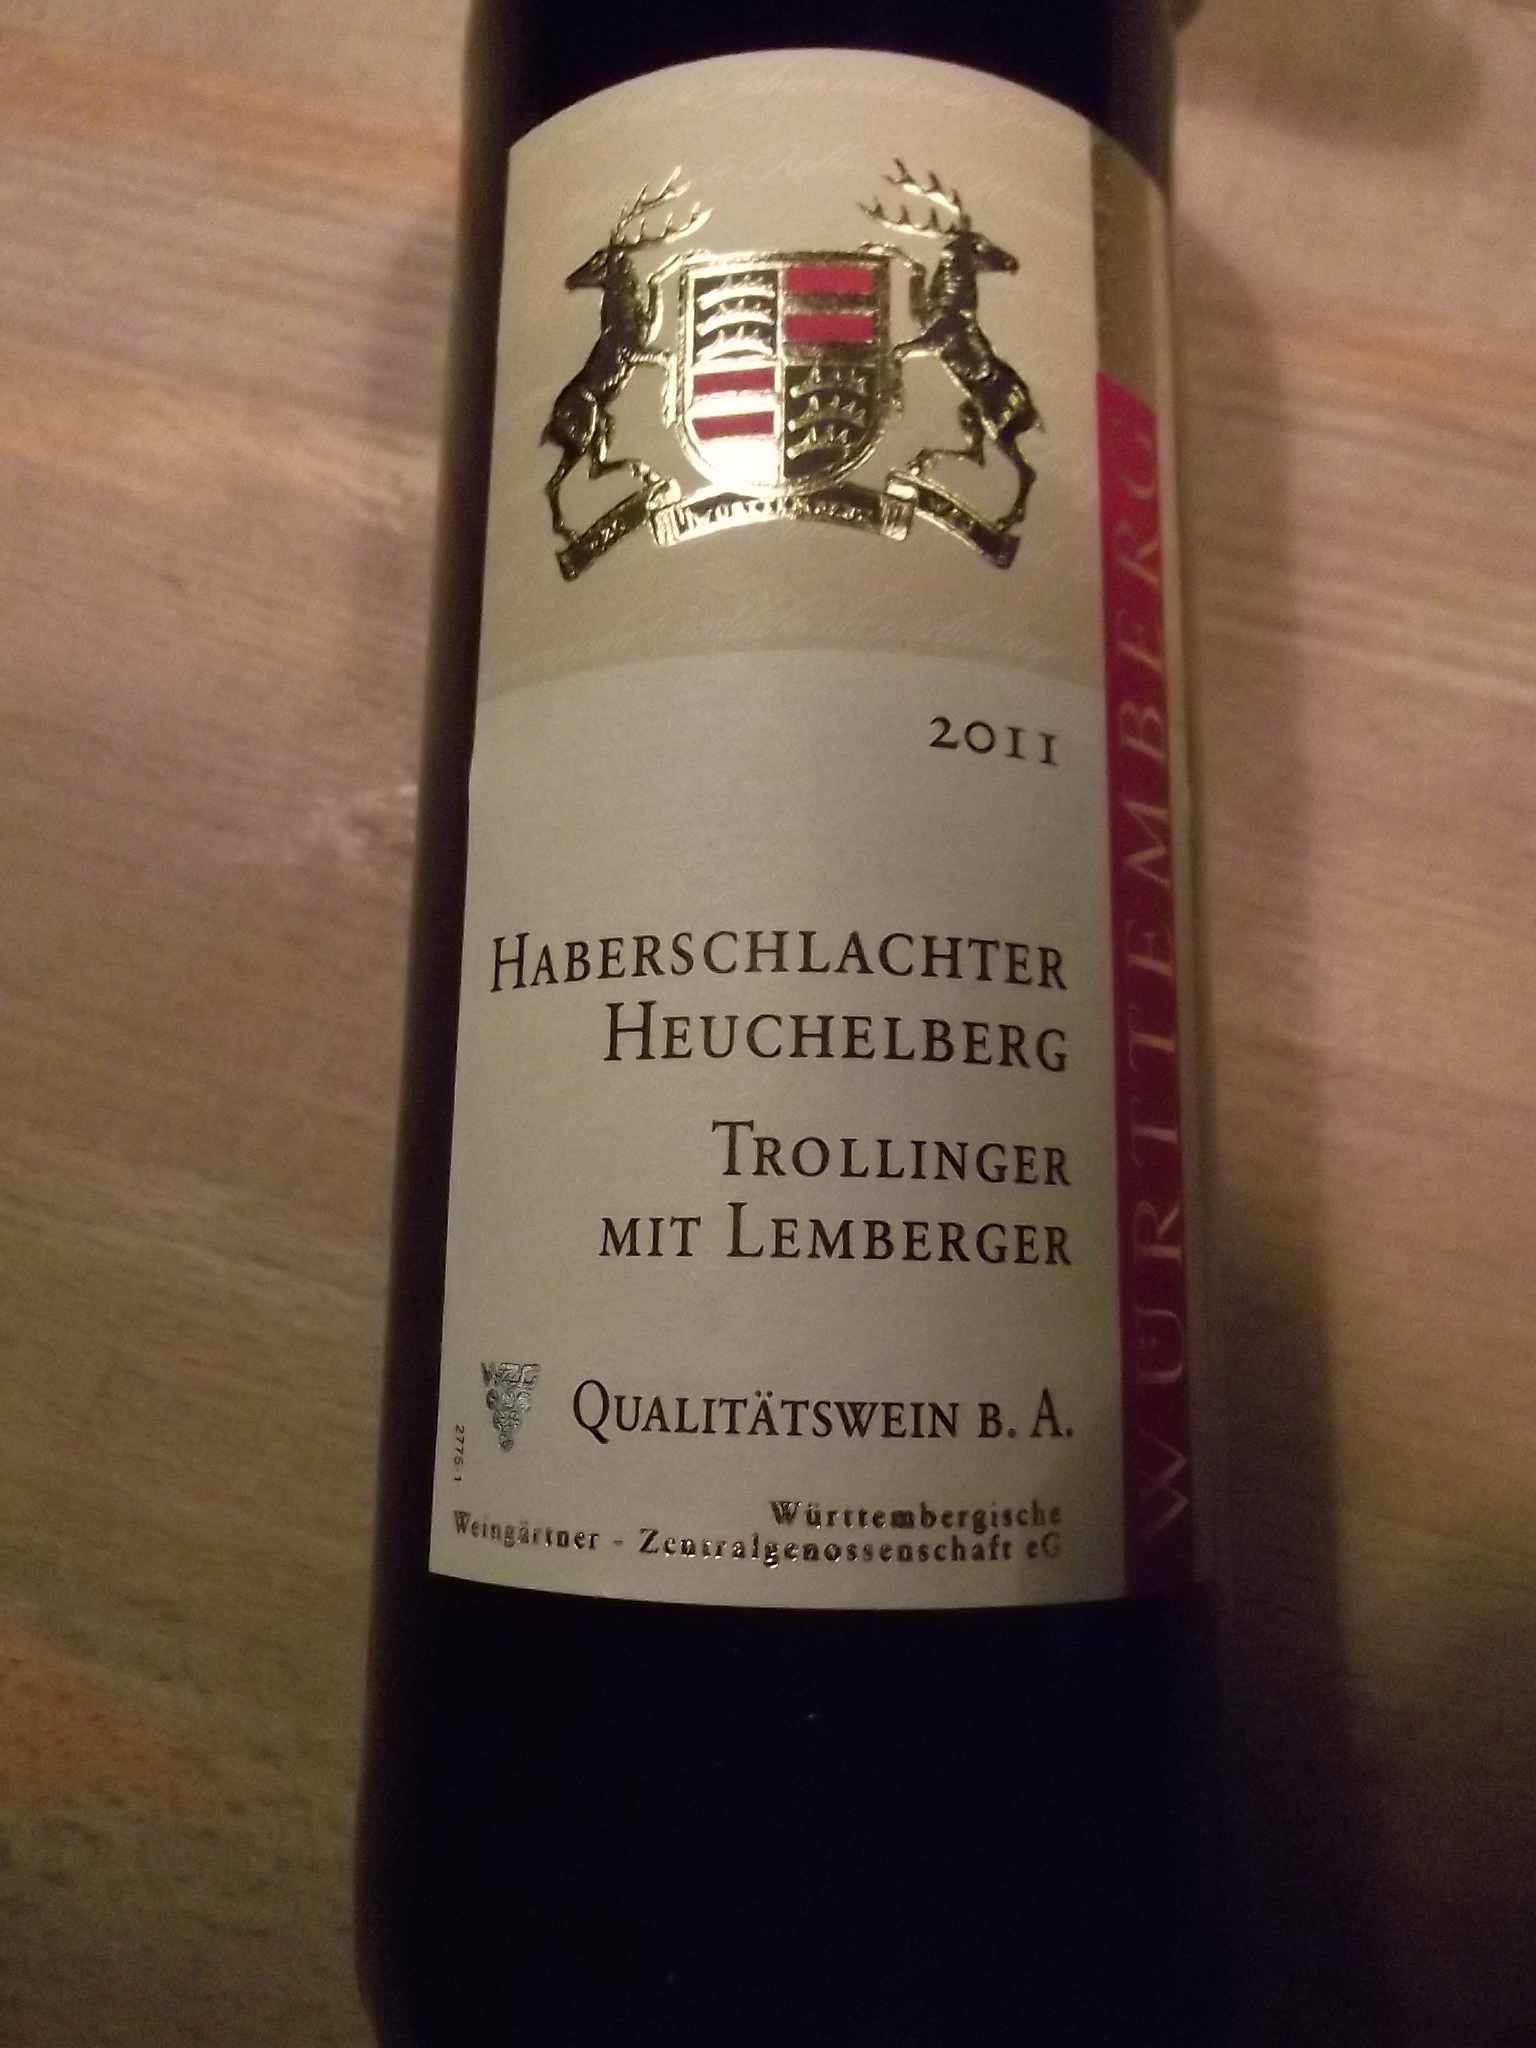 Württemberger Rotwein aus Haberschlacht